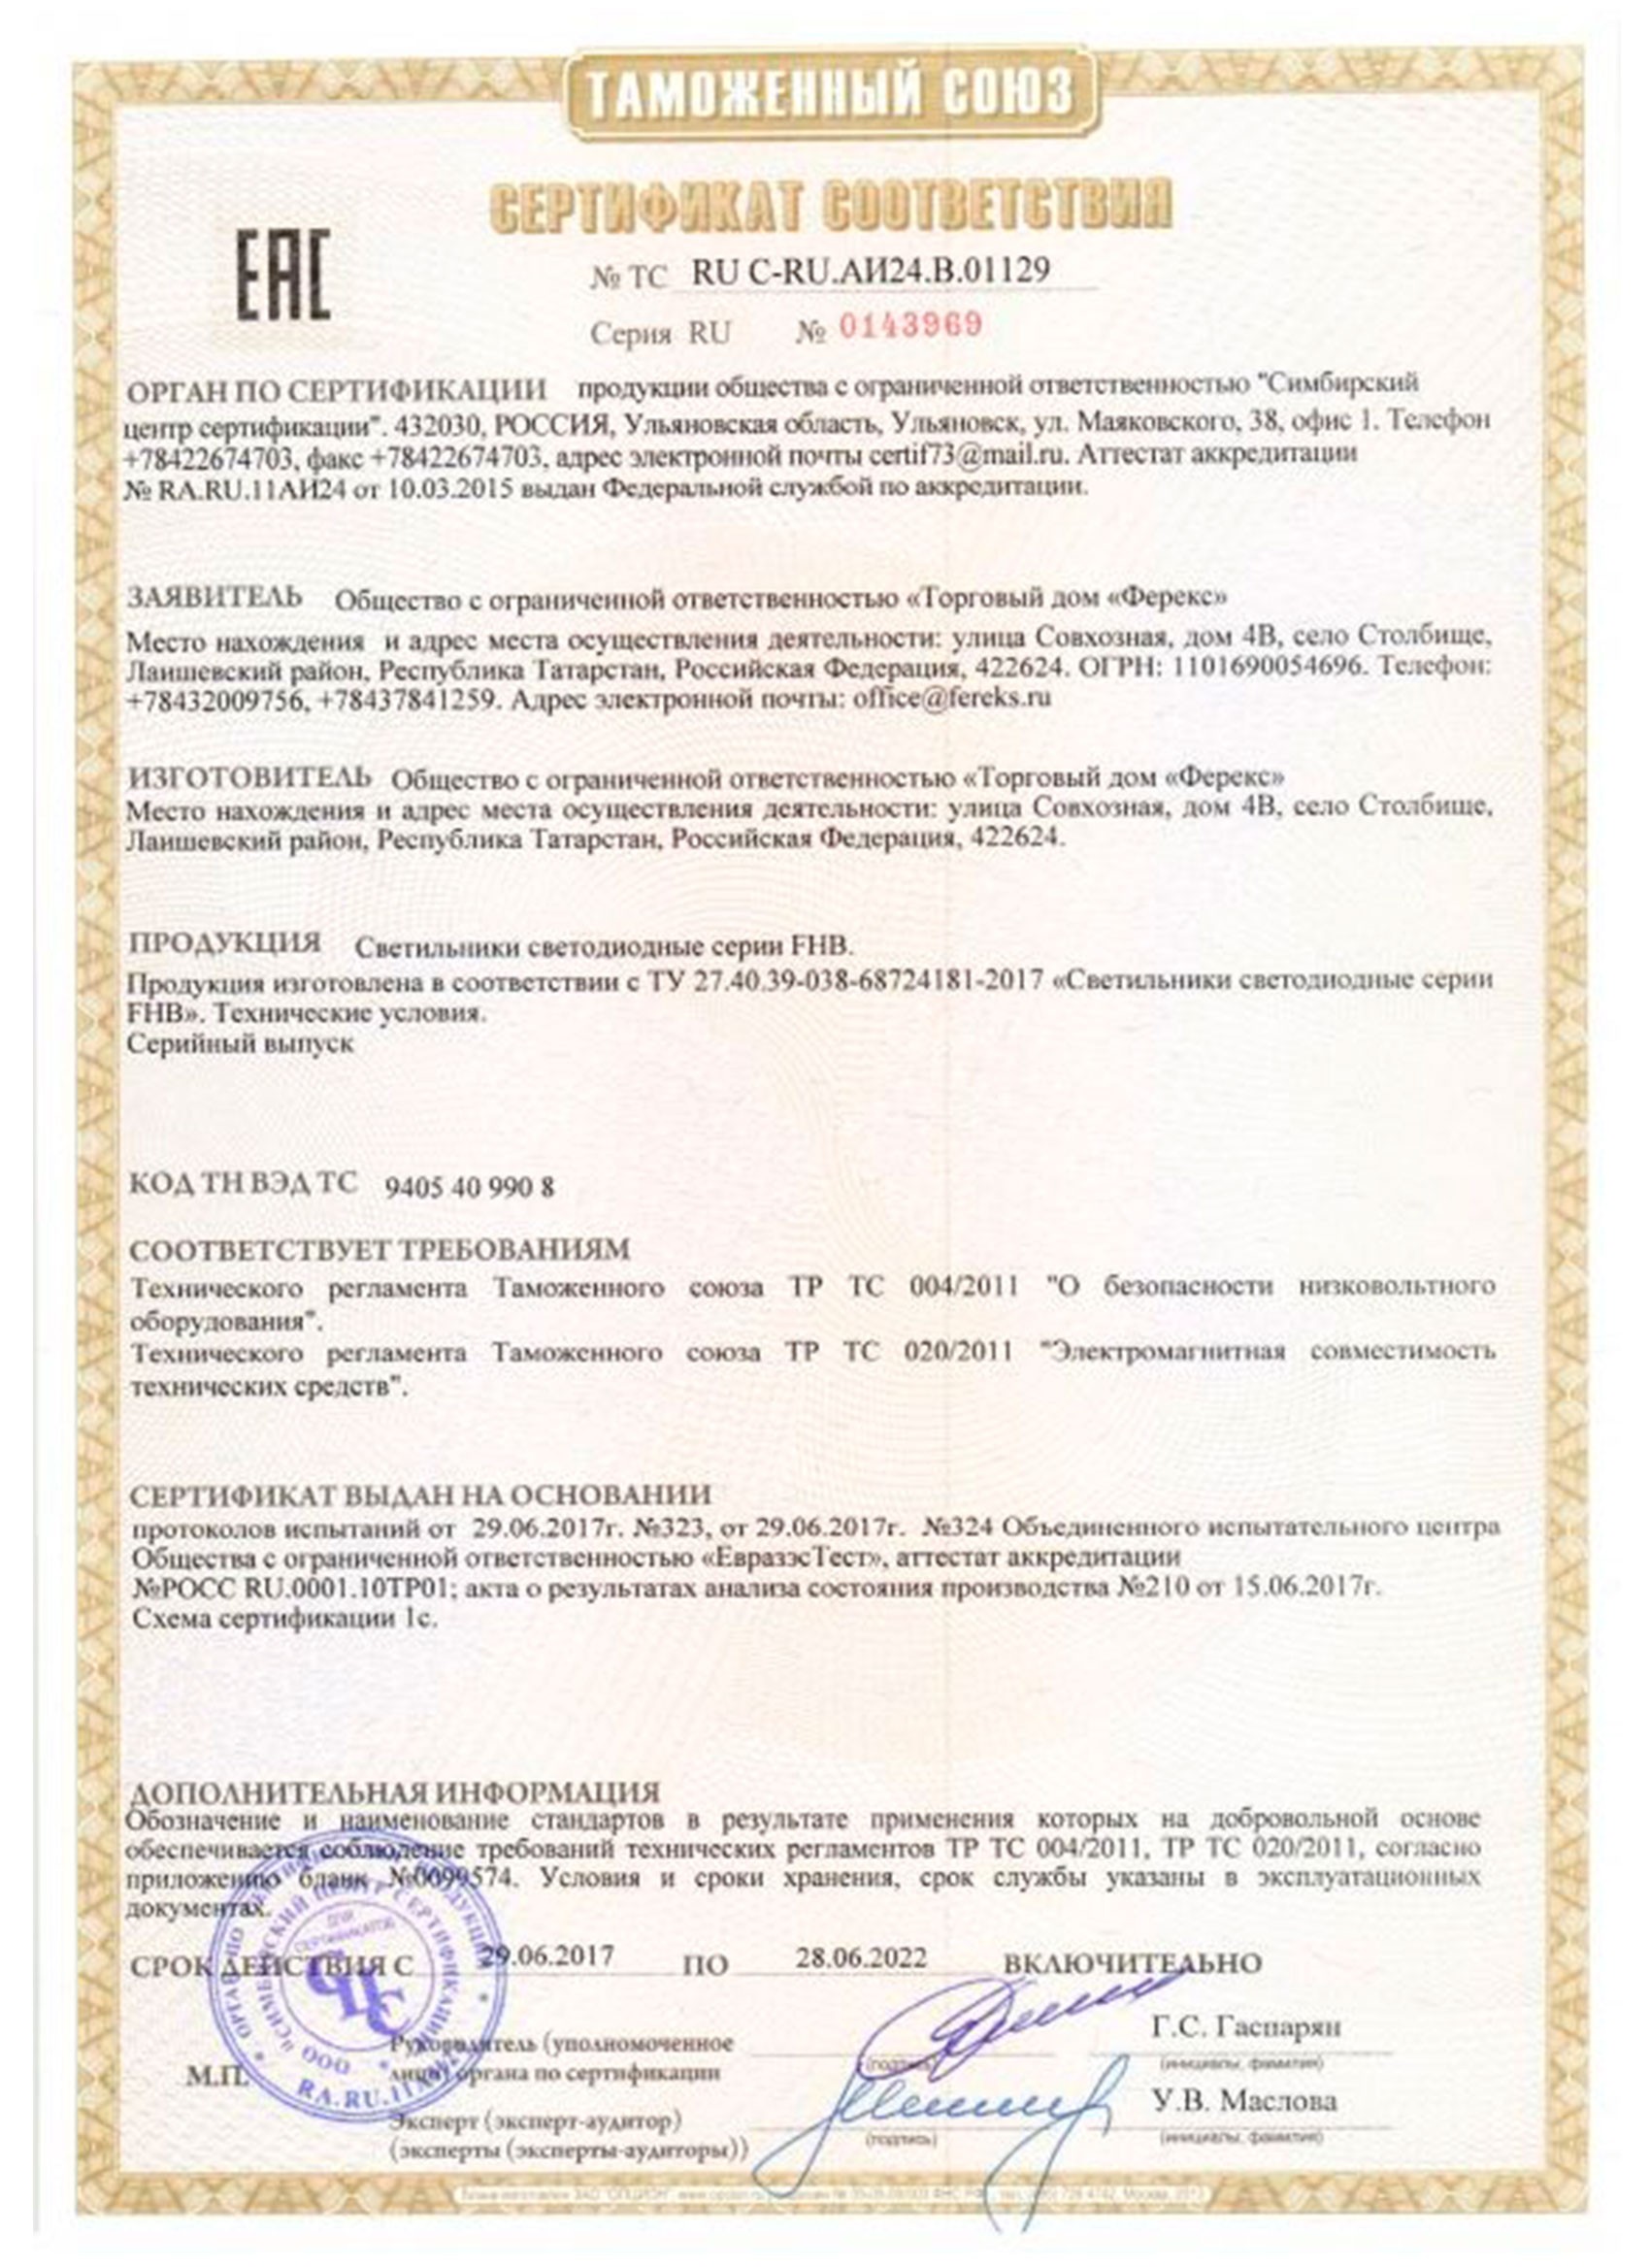 Сертификат таможенного союза на светильник FHB